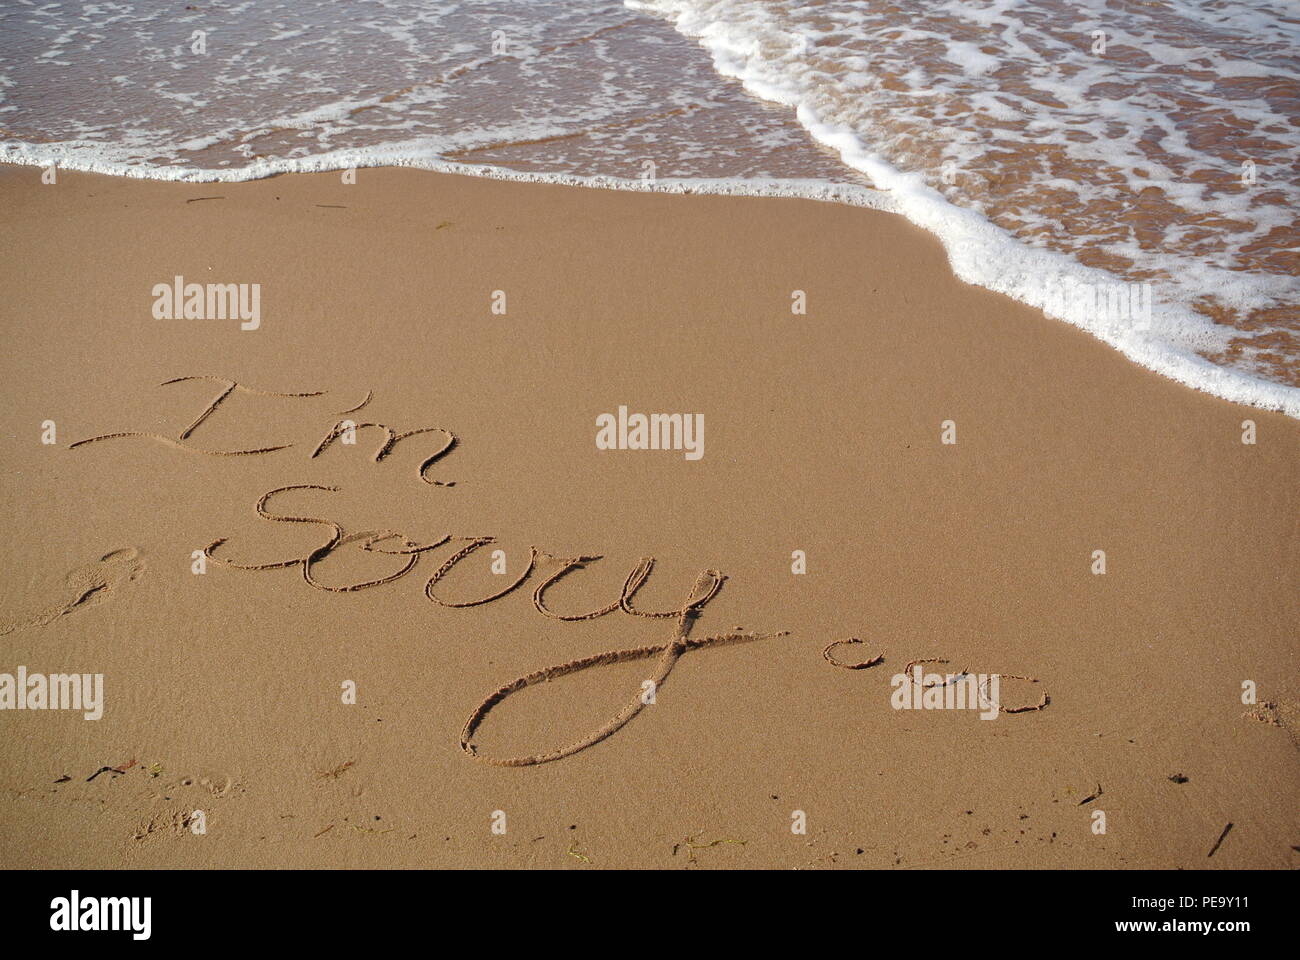 Eine schöne Entschuldigung Nachricht 'Es tut mir Leid' handschriftlich in einer kursiven Stil auf dem roten Sand auf einem Strand mit einer Welle, die in die oberen Teil, PEI, Kanada Stockfoto